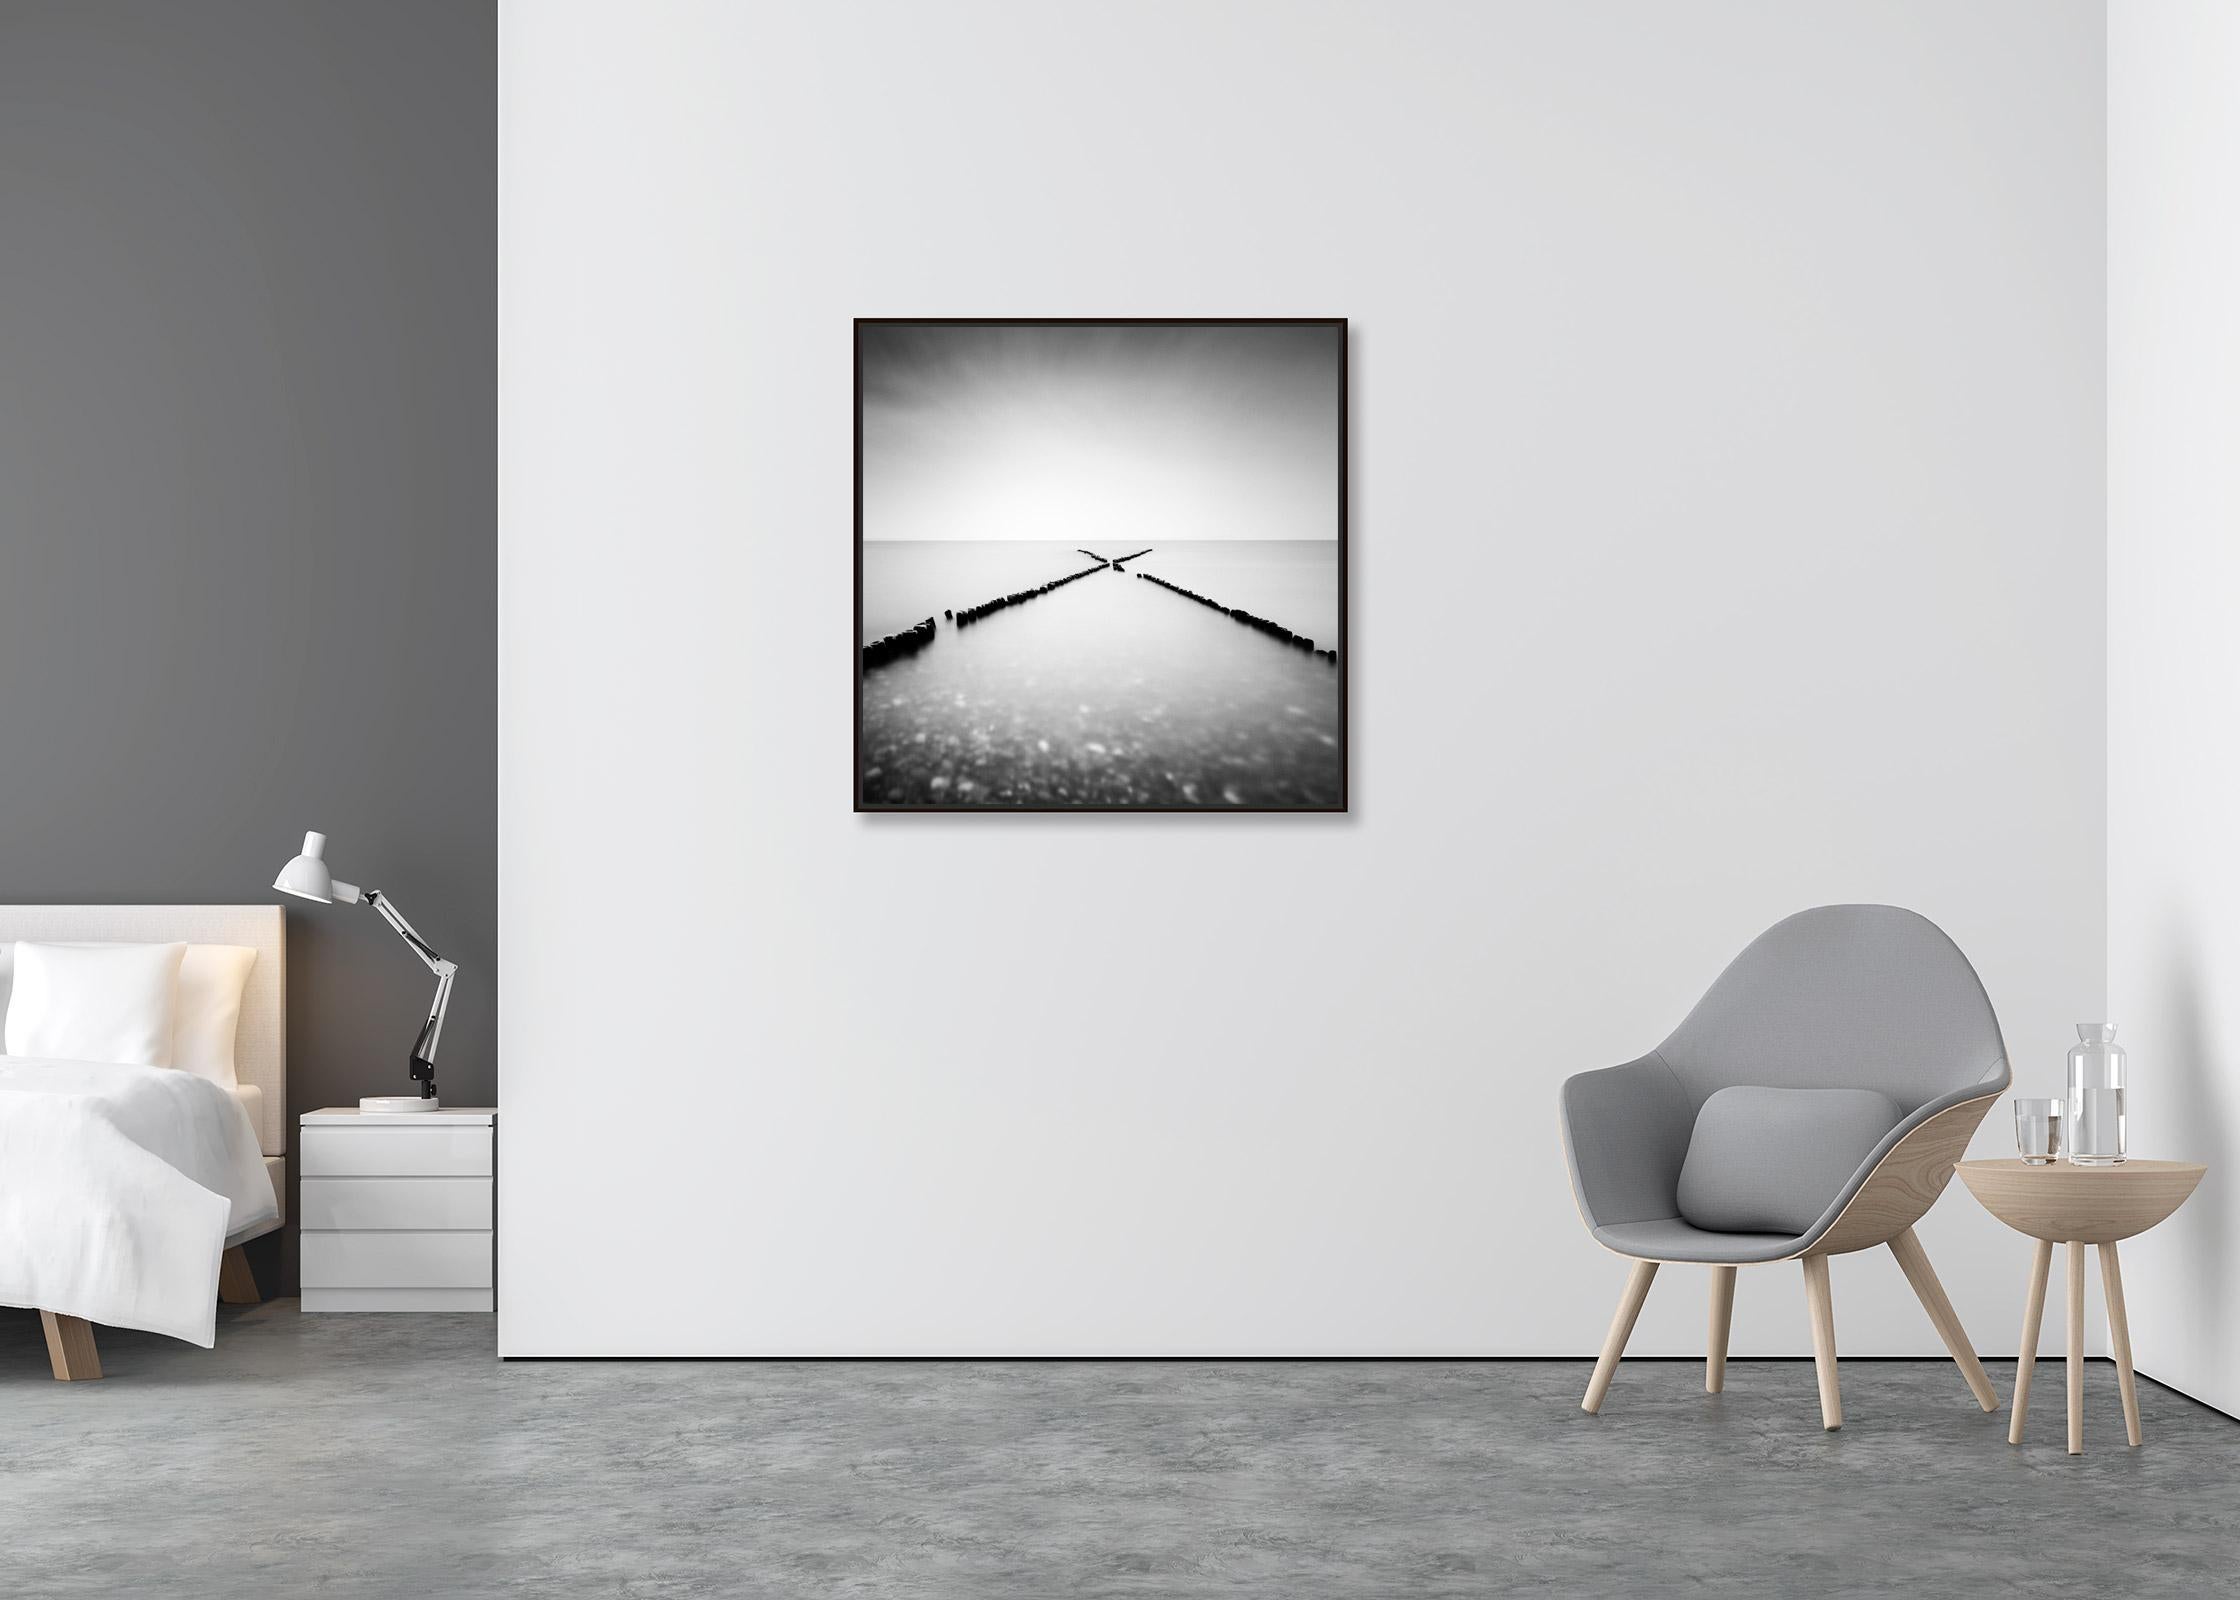 X - Factor, Sylt, Allemagne, longue exposition, photographie de paysage aquatique en noir et blanc - Contemporain Photograph par Gerald Berghammer